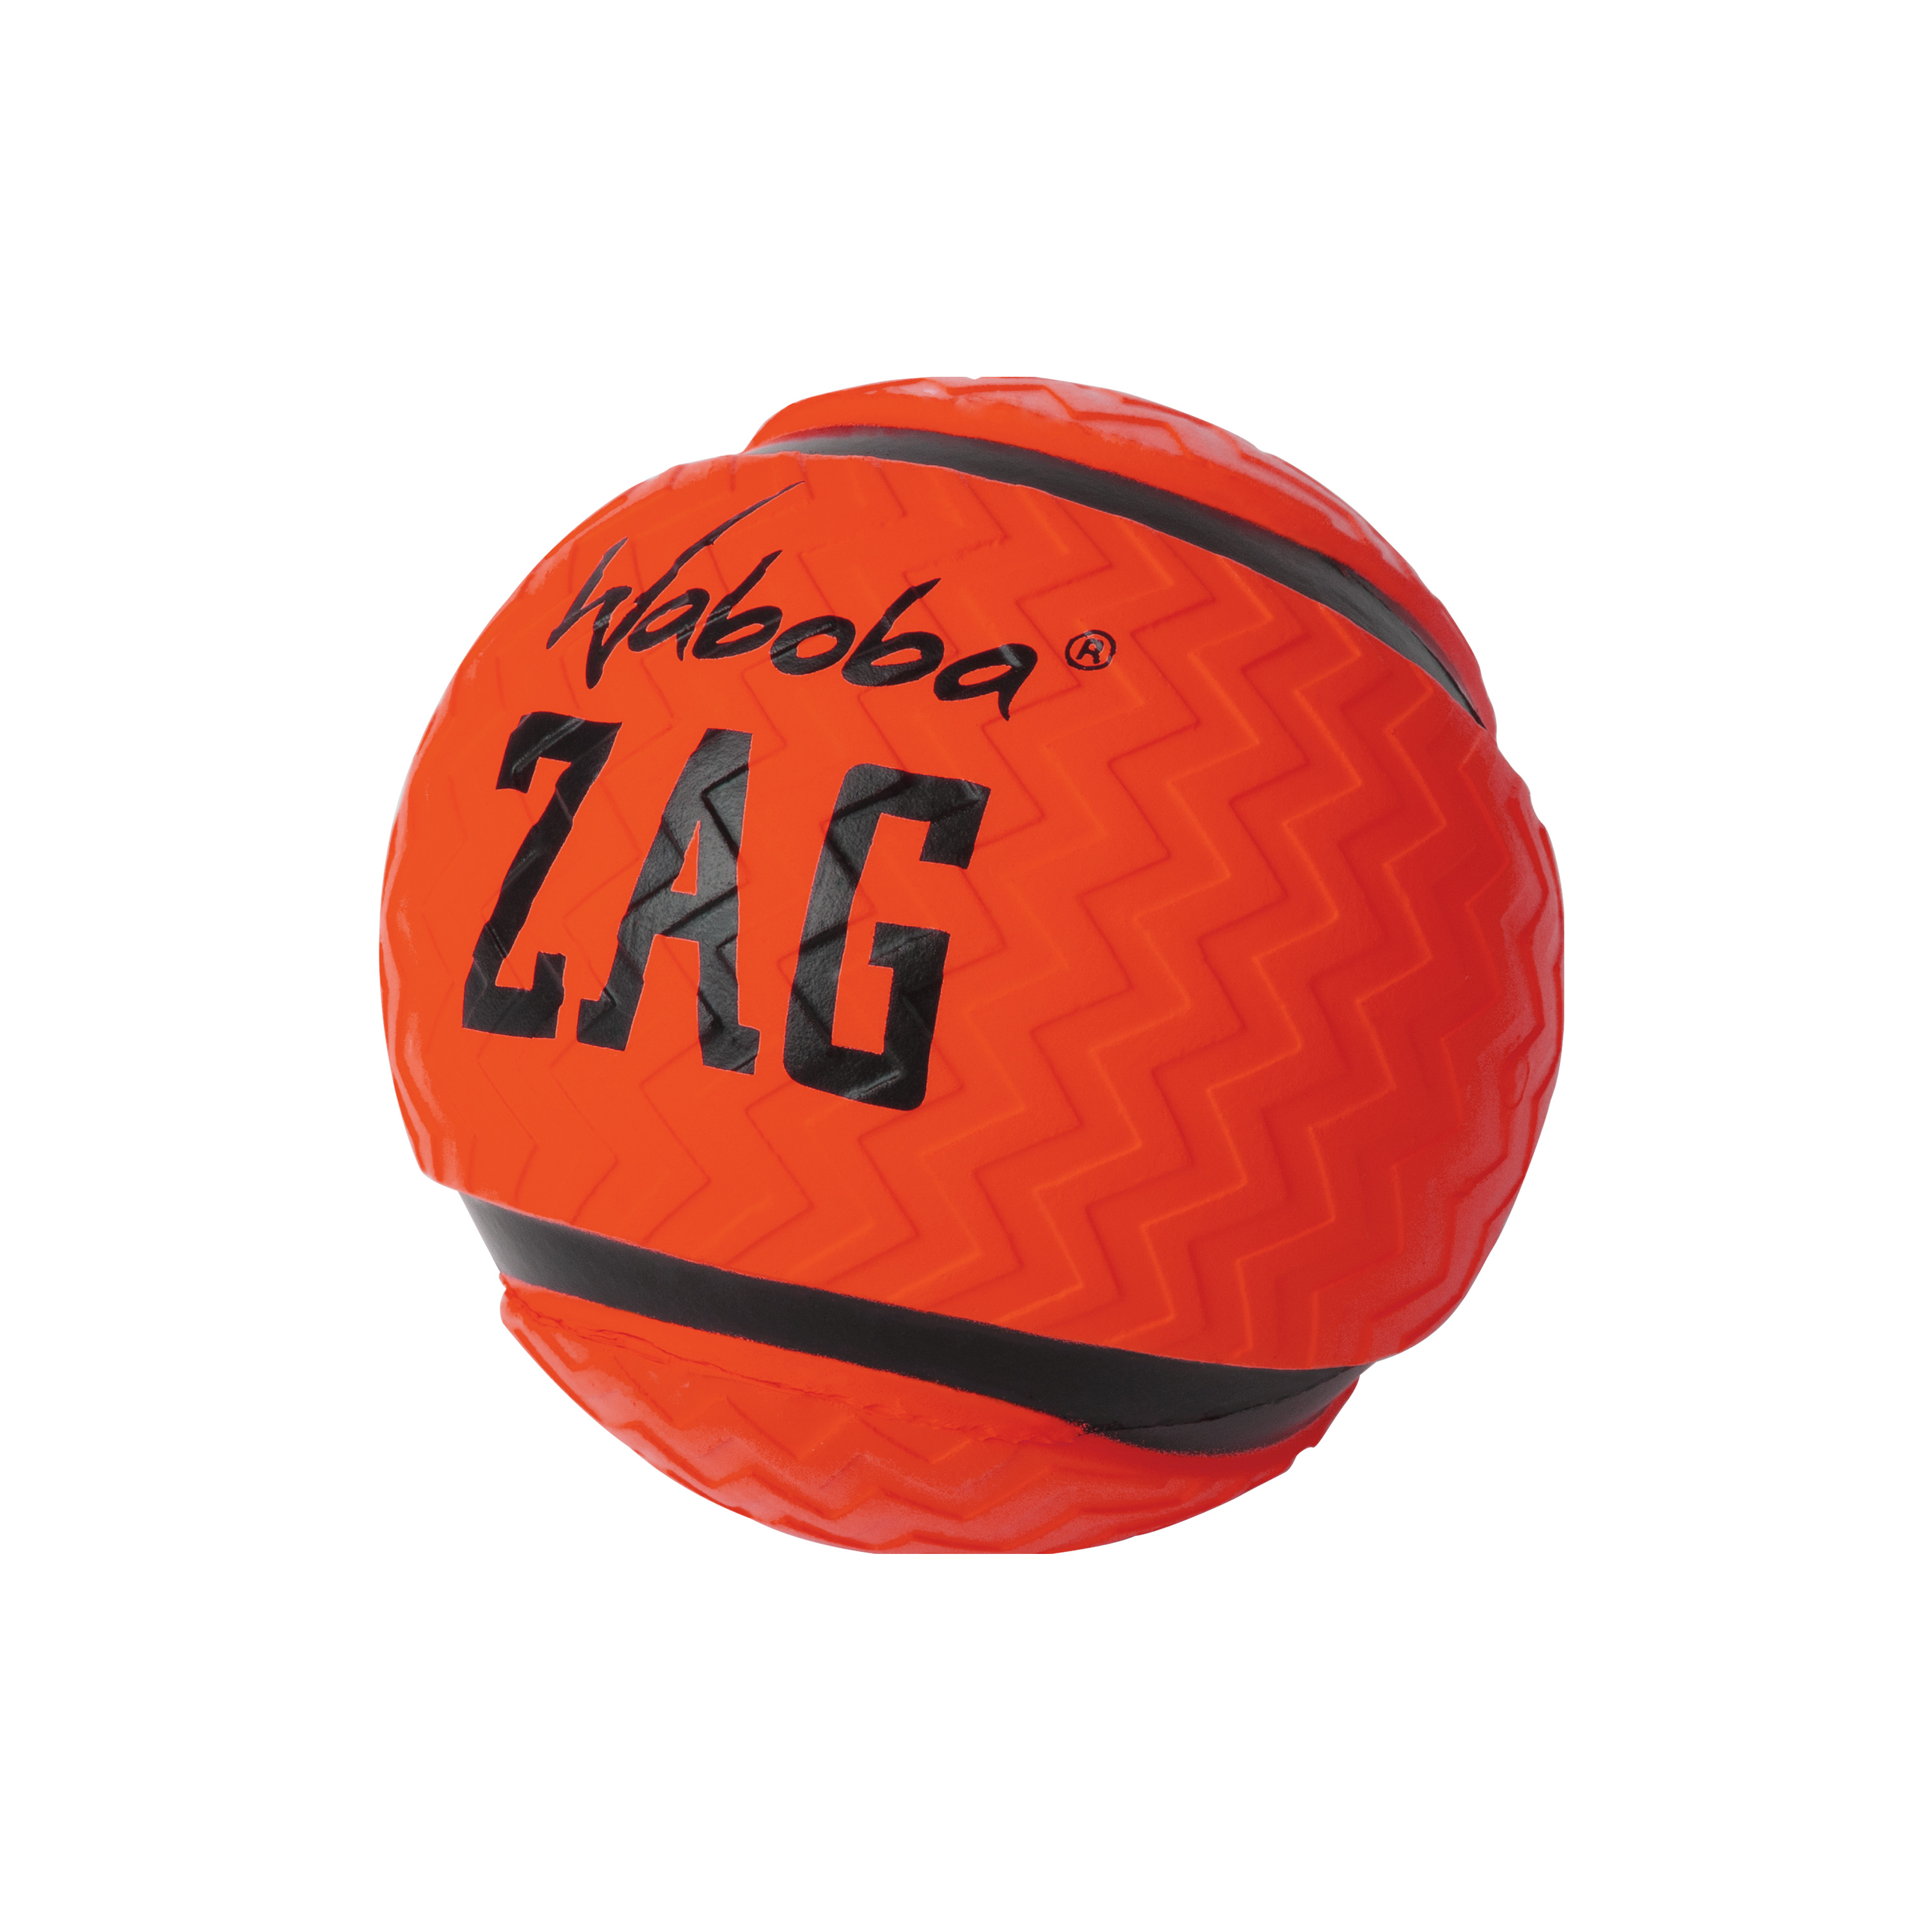 وابوبا زاج (Waboba Zag)، كرة نطاطة مائية